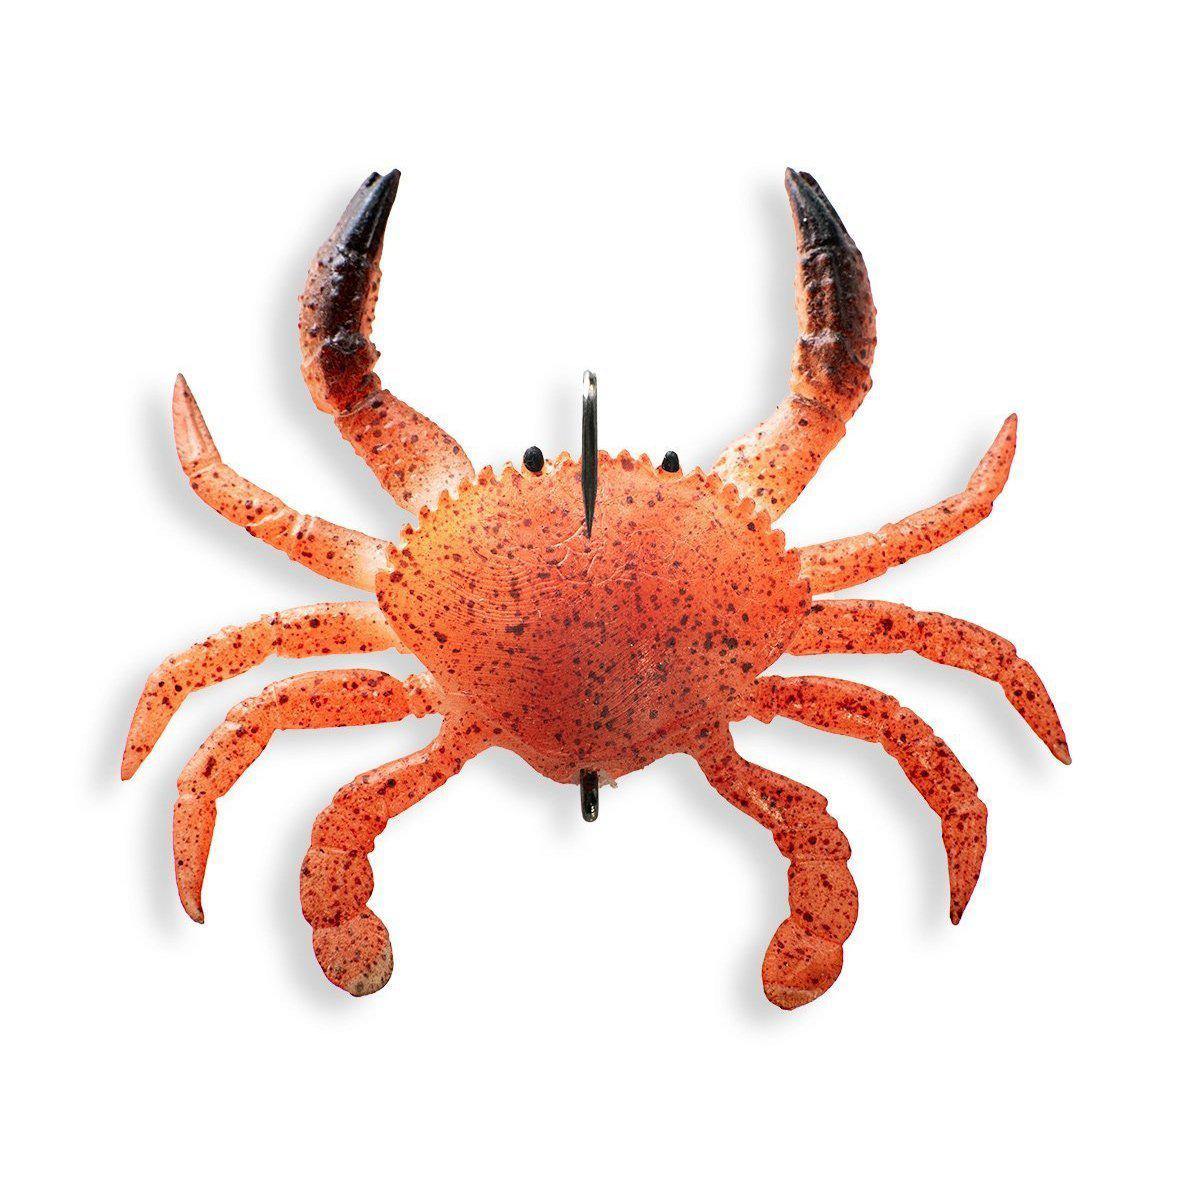 Chasebaits Crusty Crab Fishing Lure, Gold Digger, 1.96 